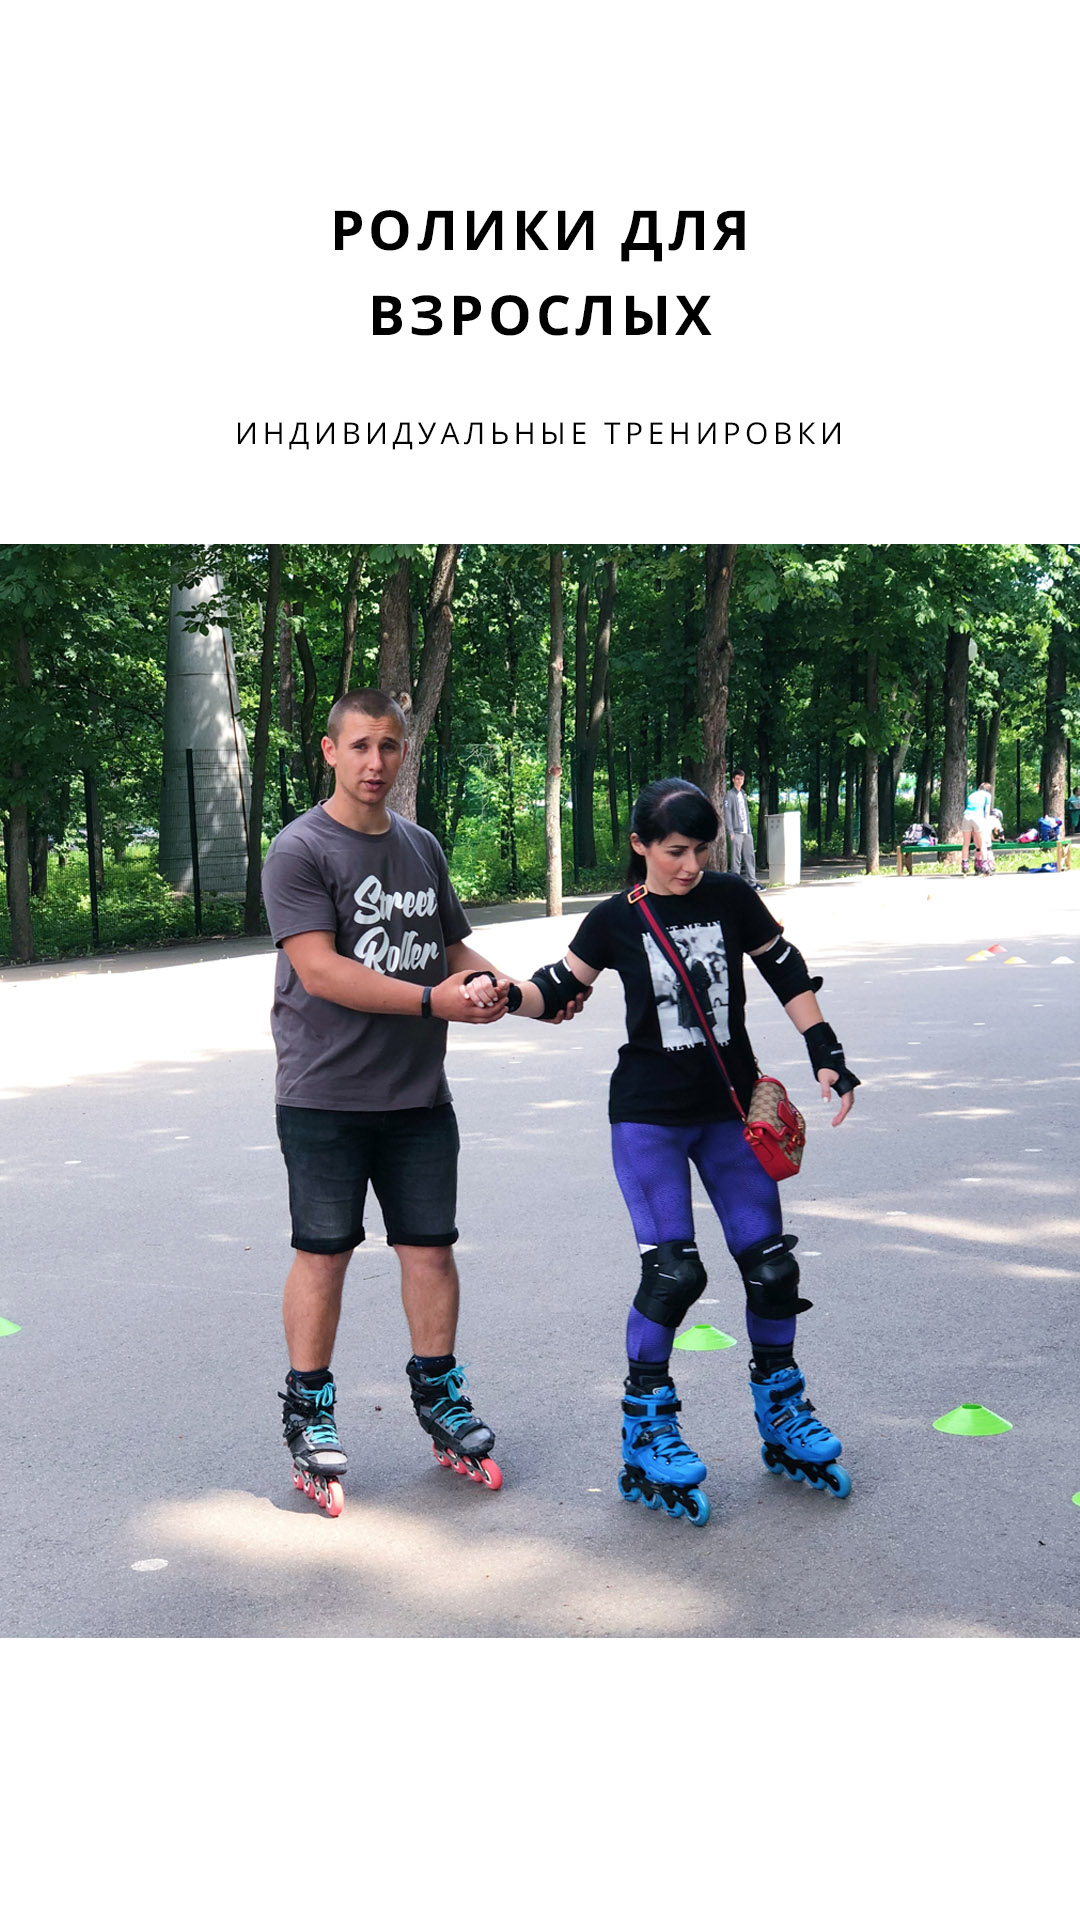 Ролики для взрослых в Парке Горького со Streetrollerschool